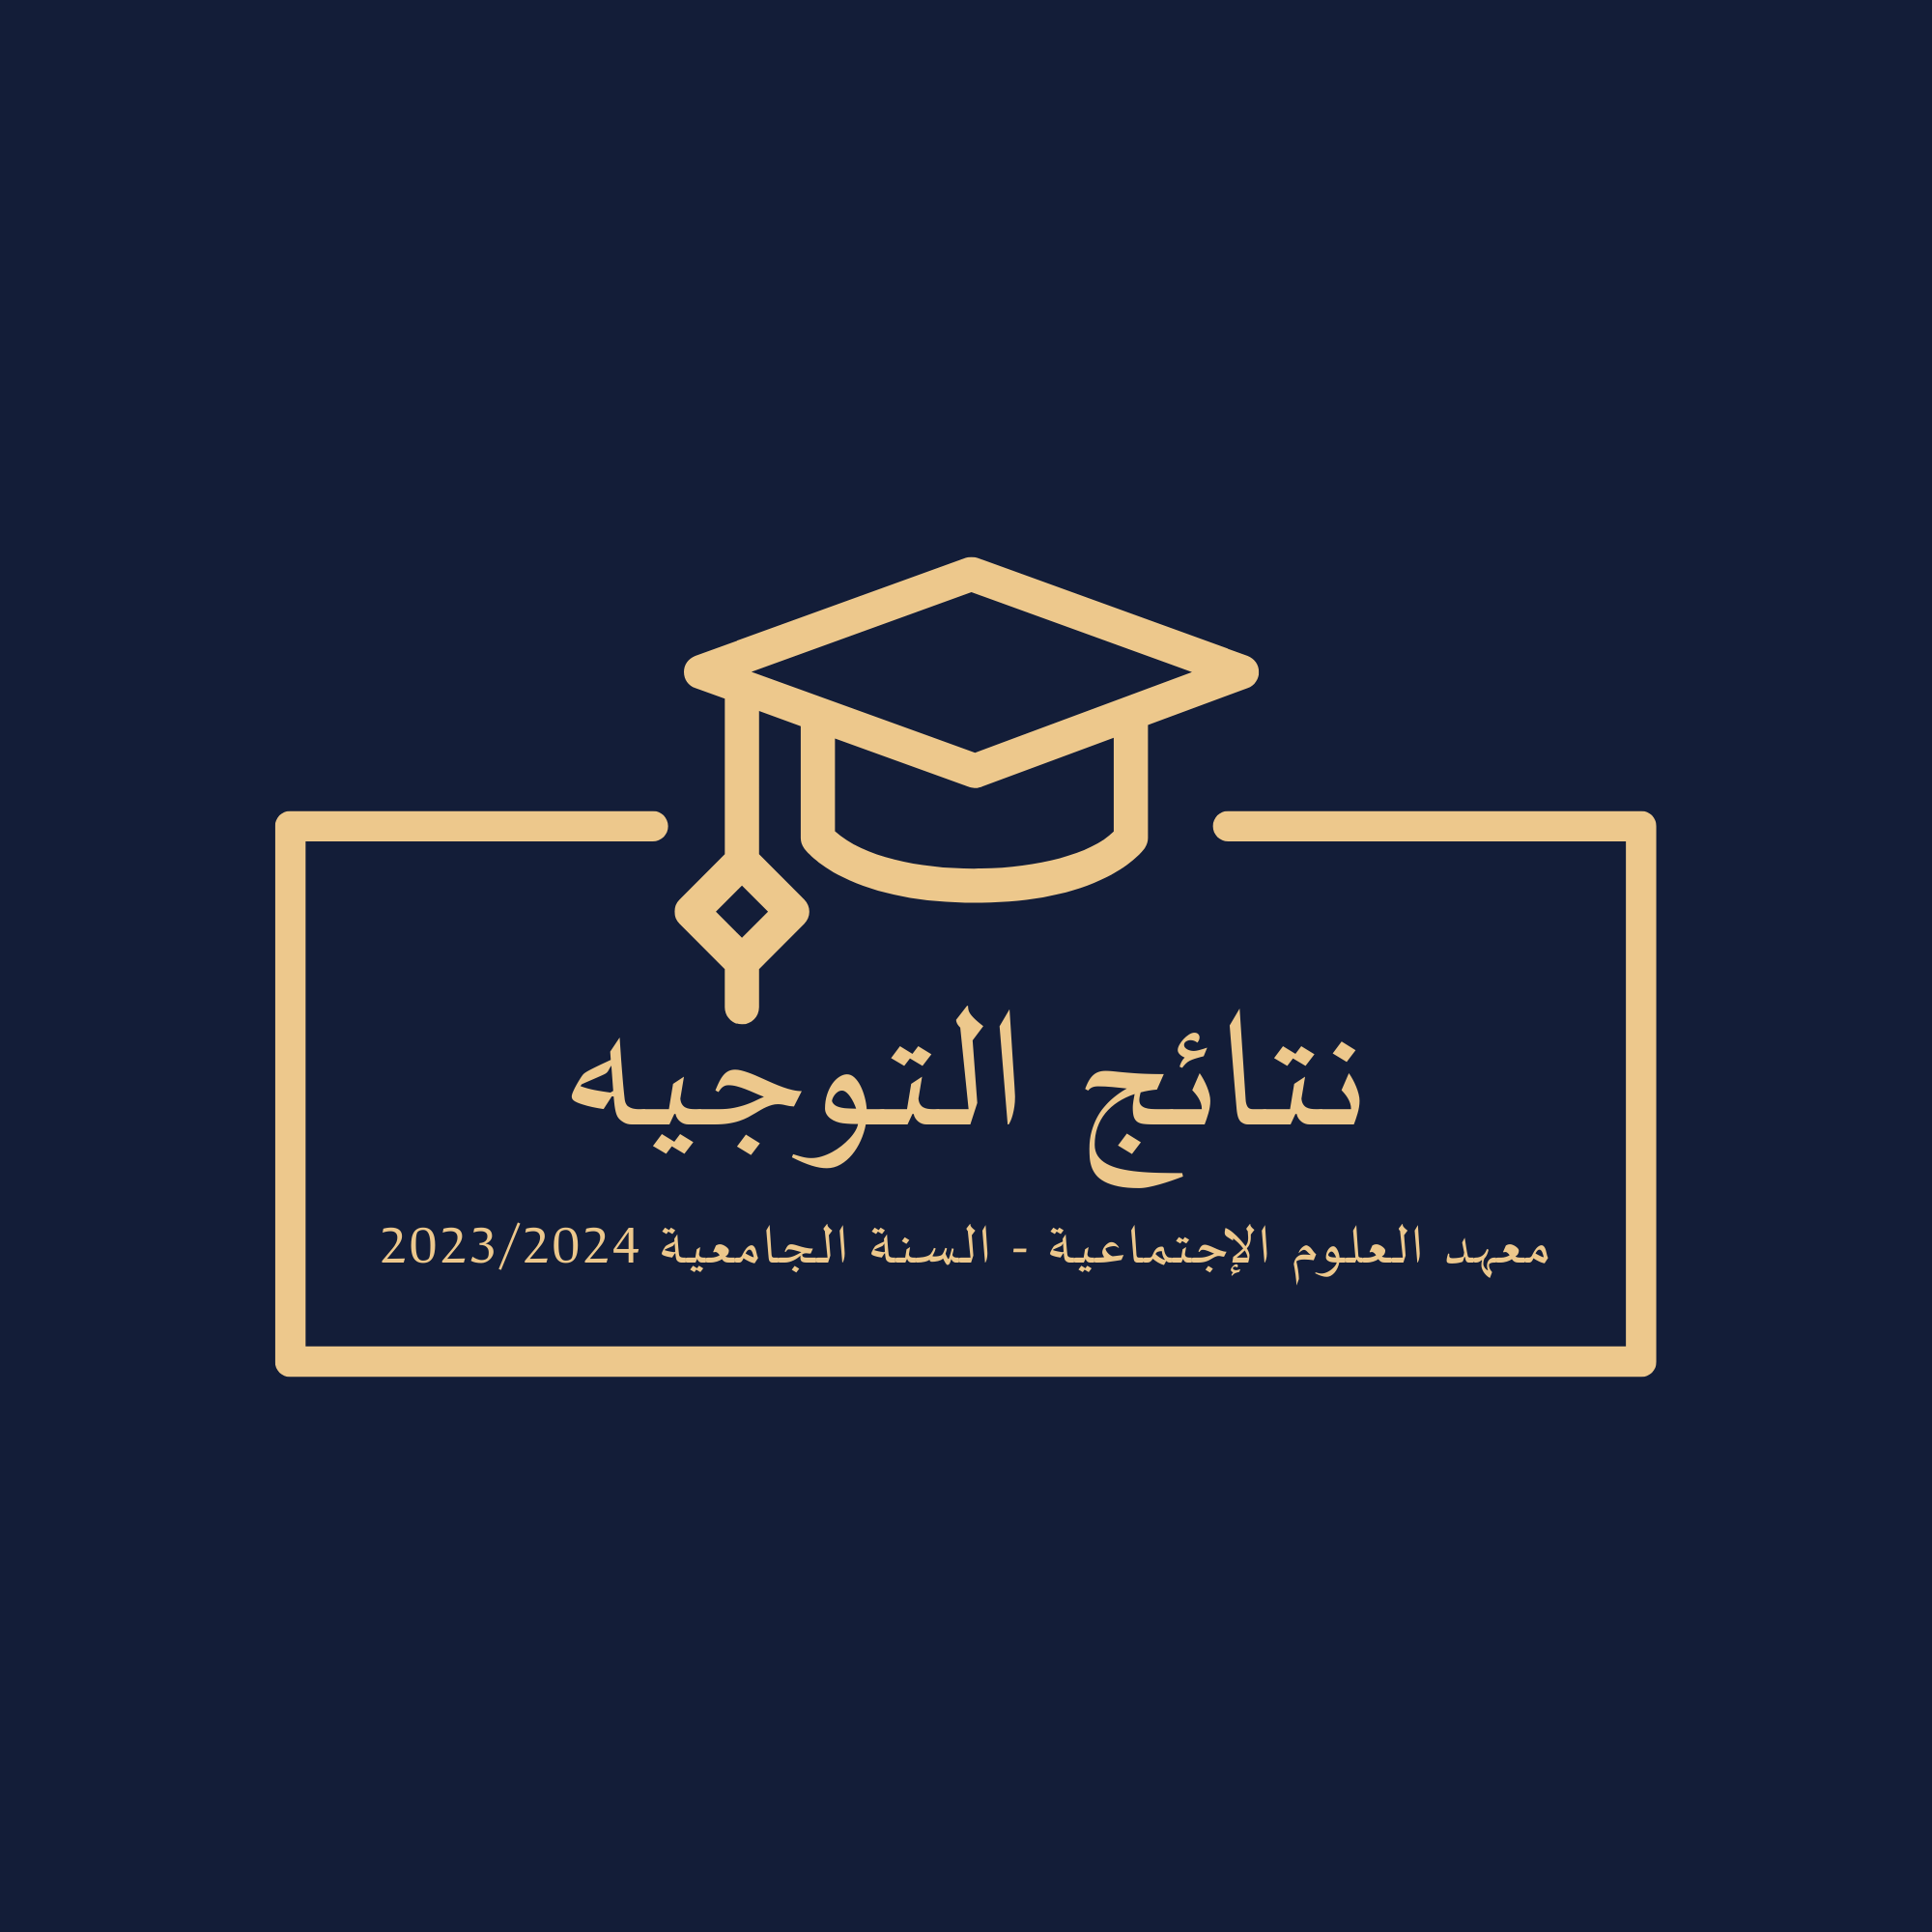 wepik-linear-monocolor-knowledge-education-centre-logo-20230922133959Lag9